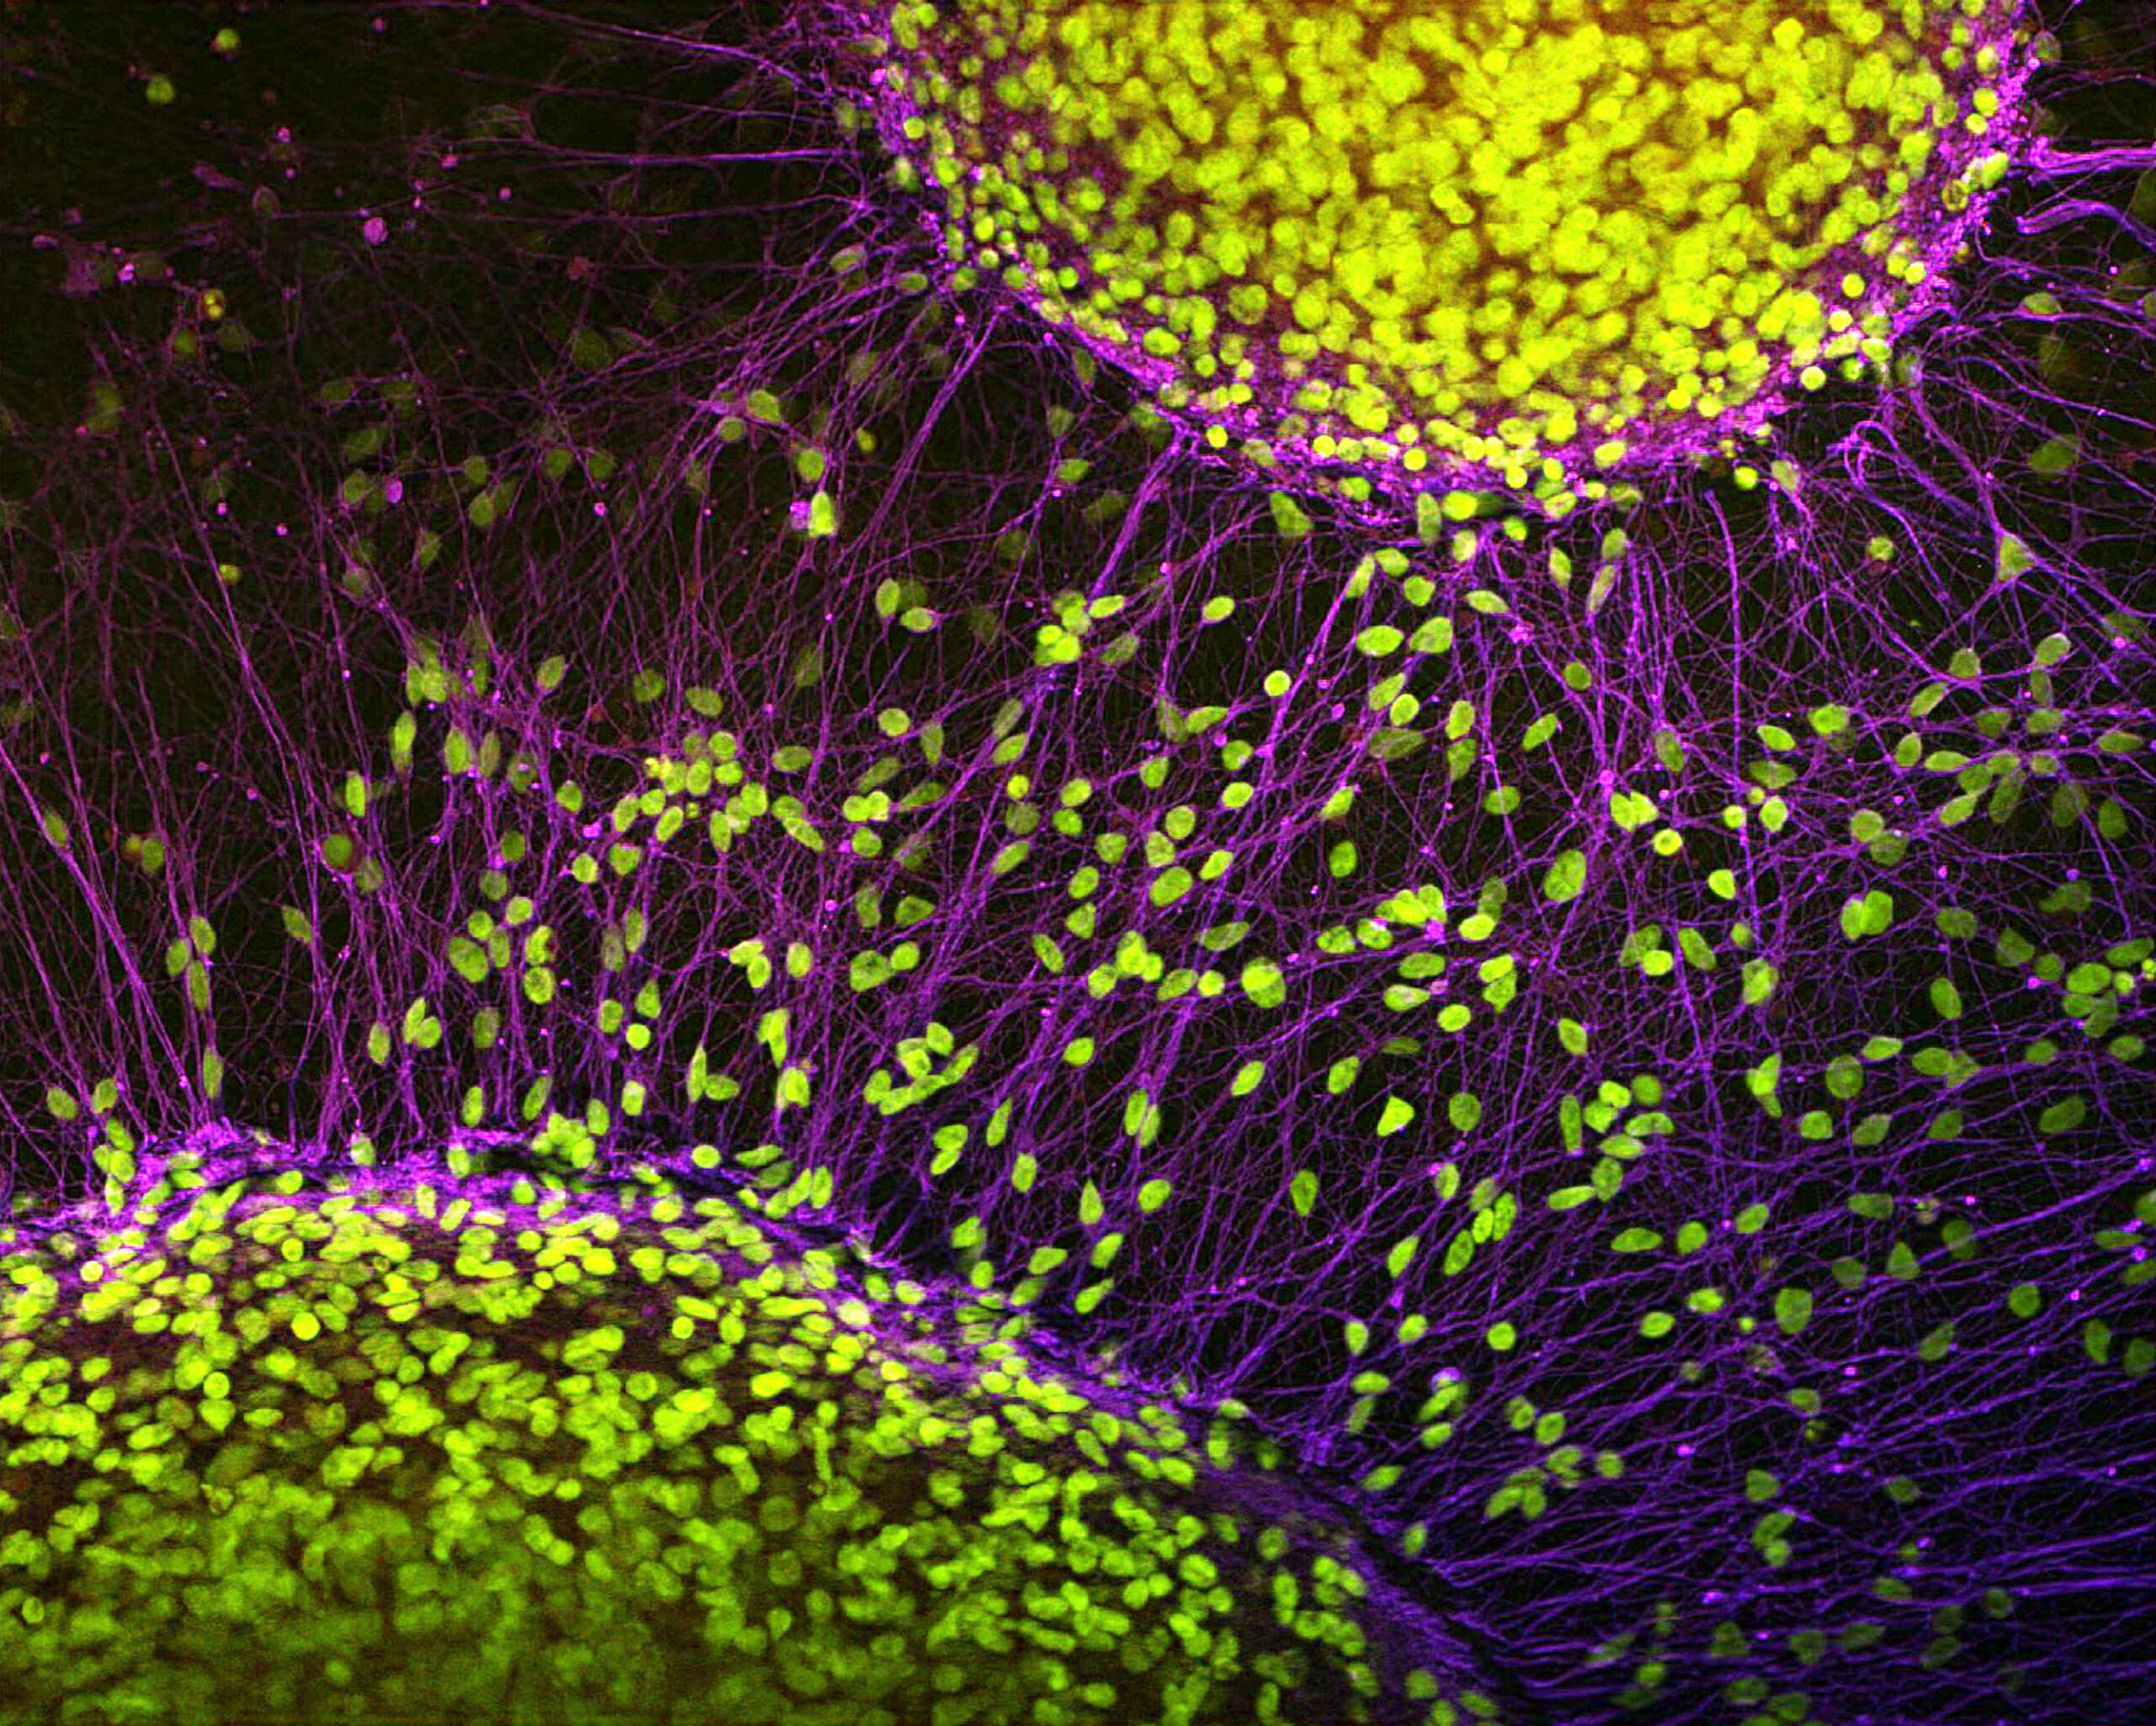 Yeni bir yöntem beyin hücrelerinin nasıl yaşlandığını izliyor